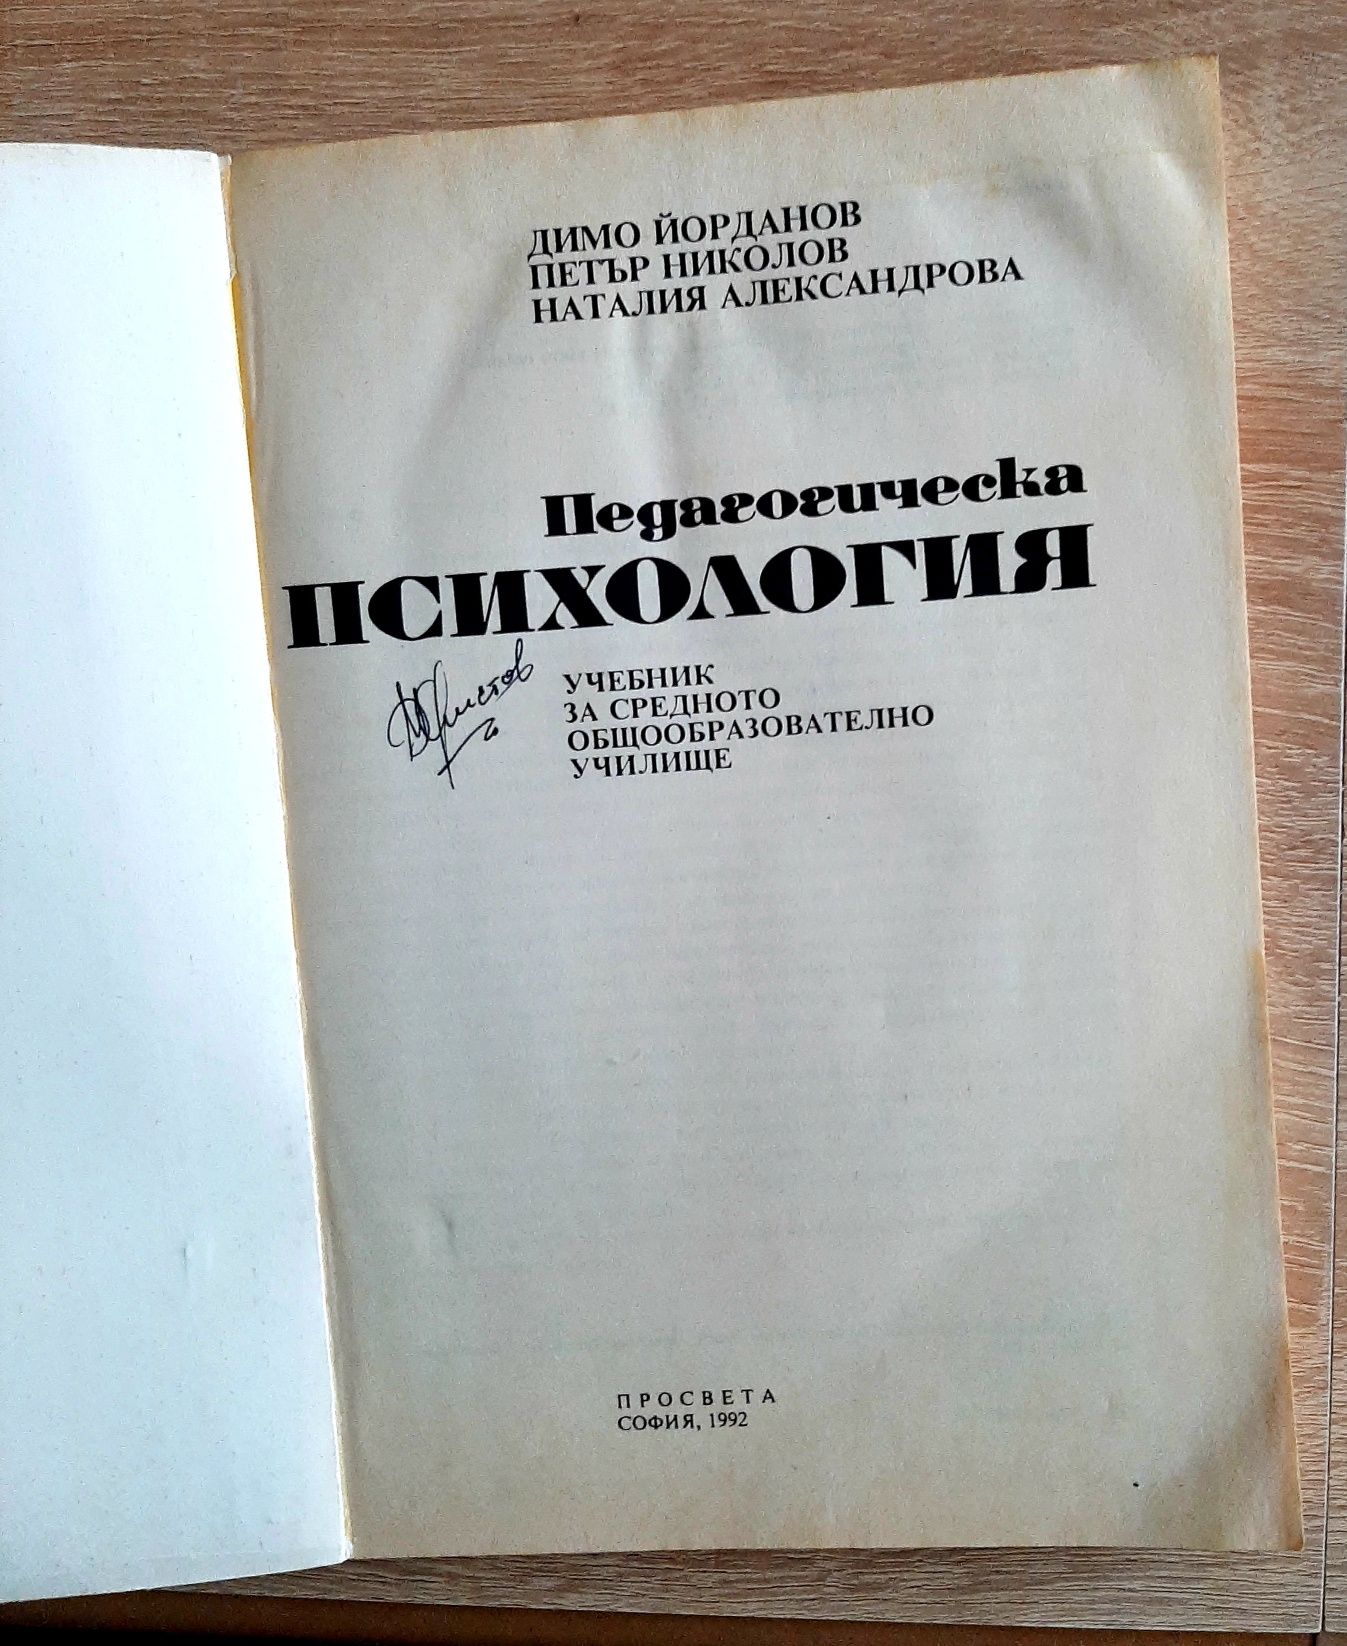 Методика на обучението по химияАнгелова,,Милчева,Генкова1984г